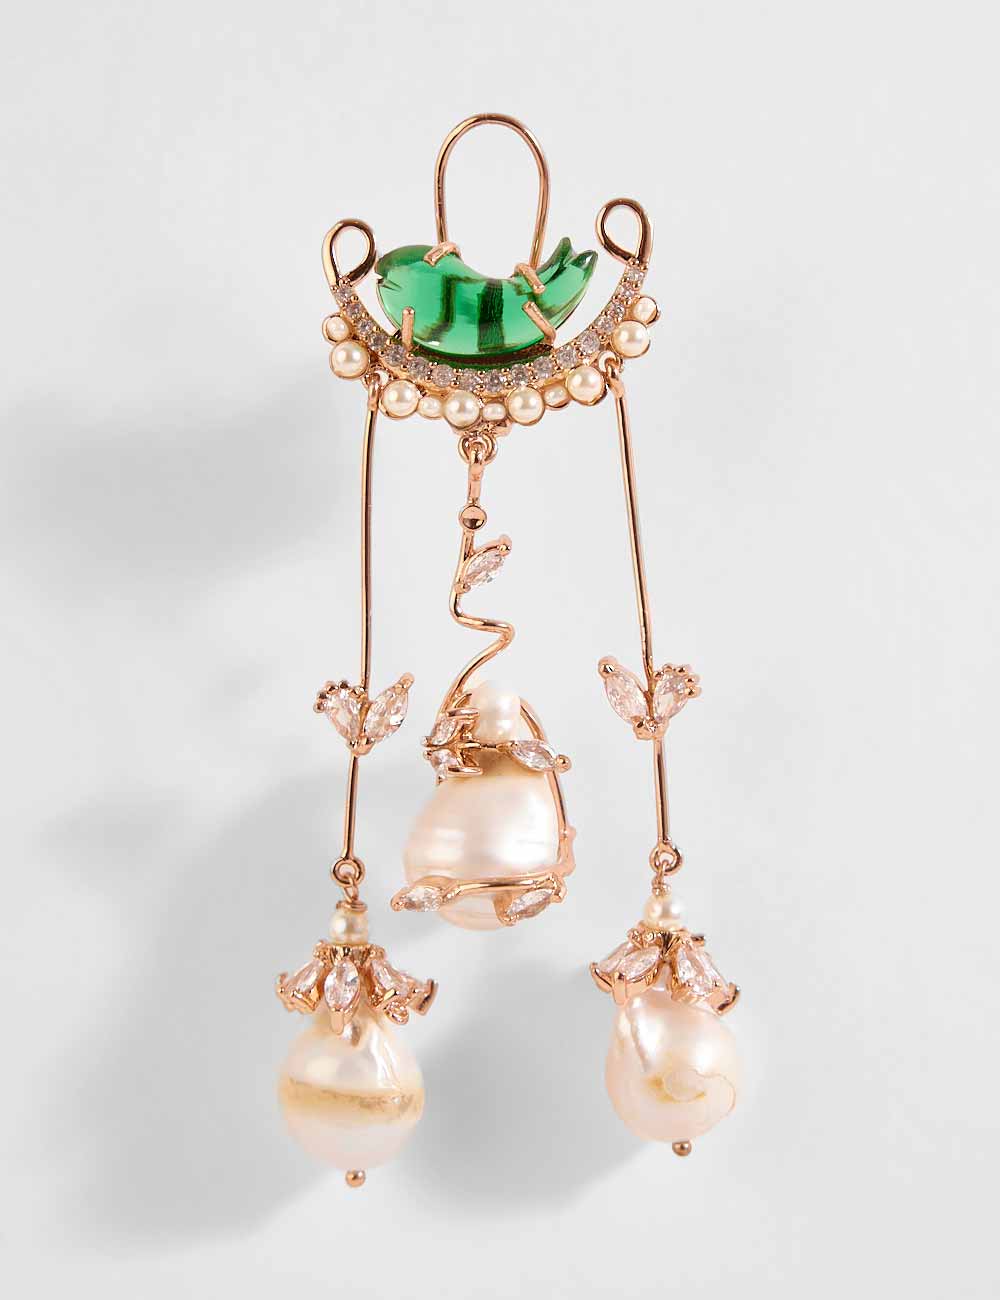 Le Cleo Dewdrop Earrings in Jade Green